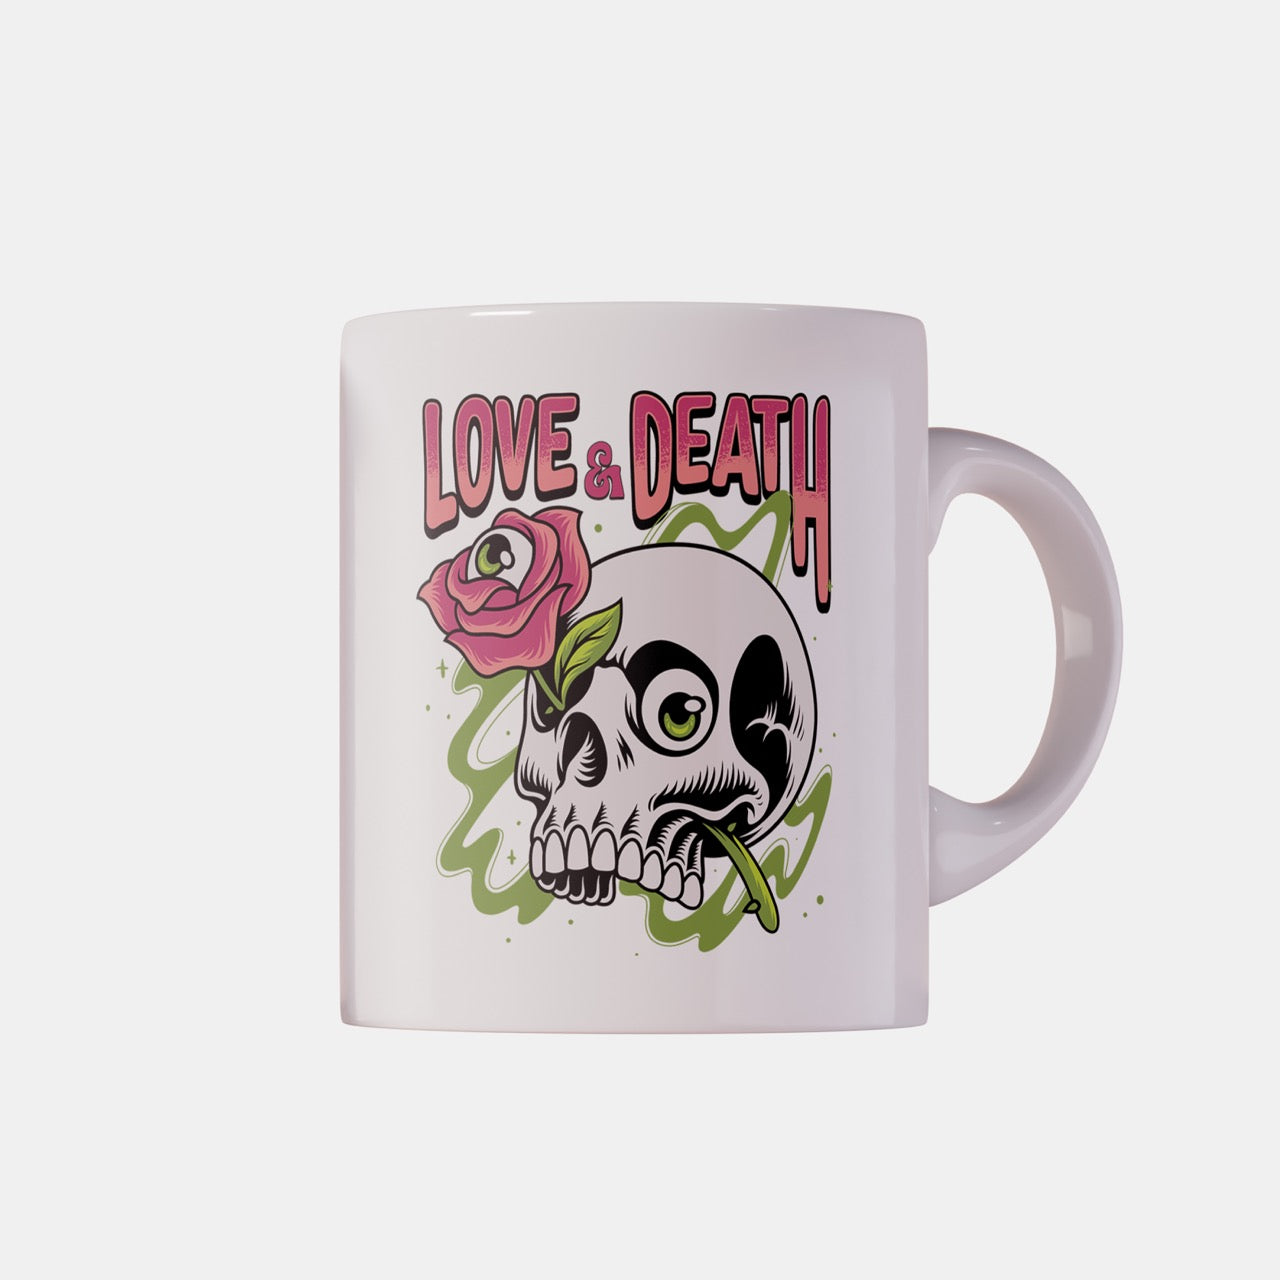 Love & Death - Ceramic Mug